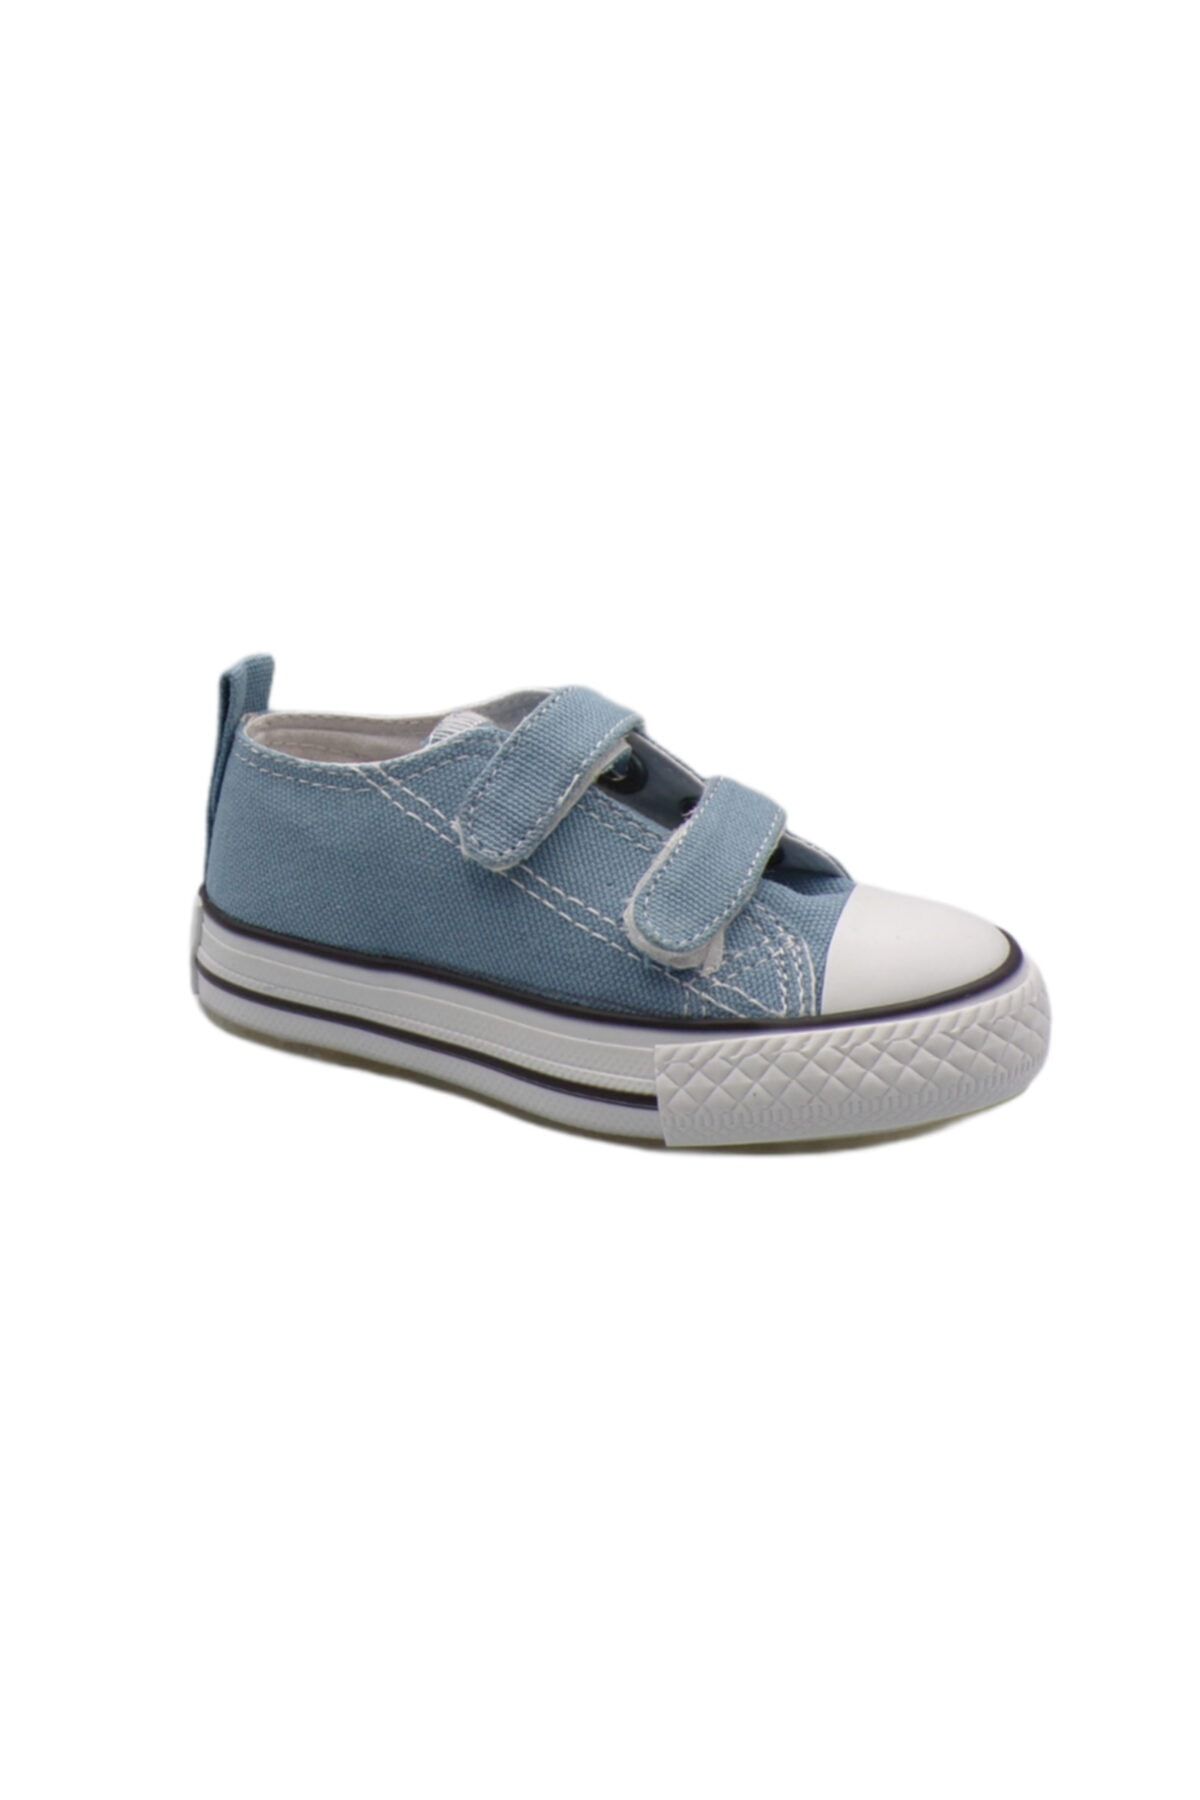 ASAF BEBE Mavi Keten Işıklı Cırtlı Bebek Ayakkabısı